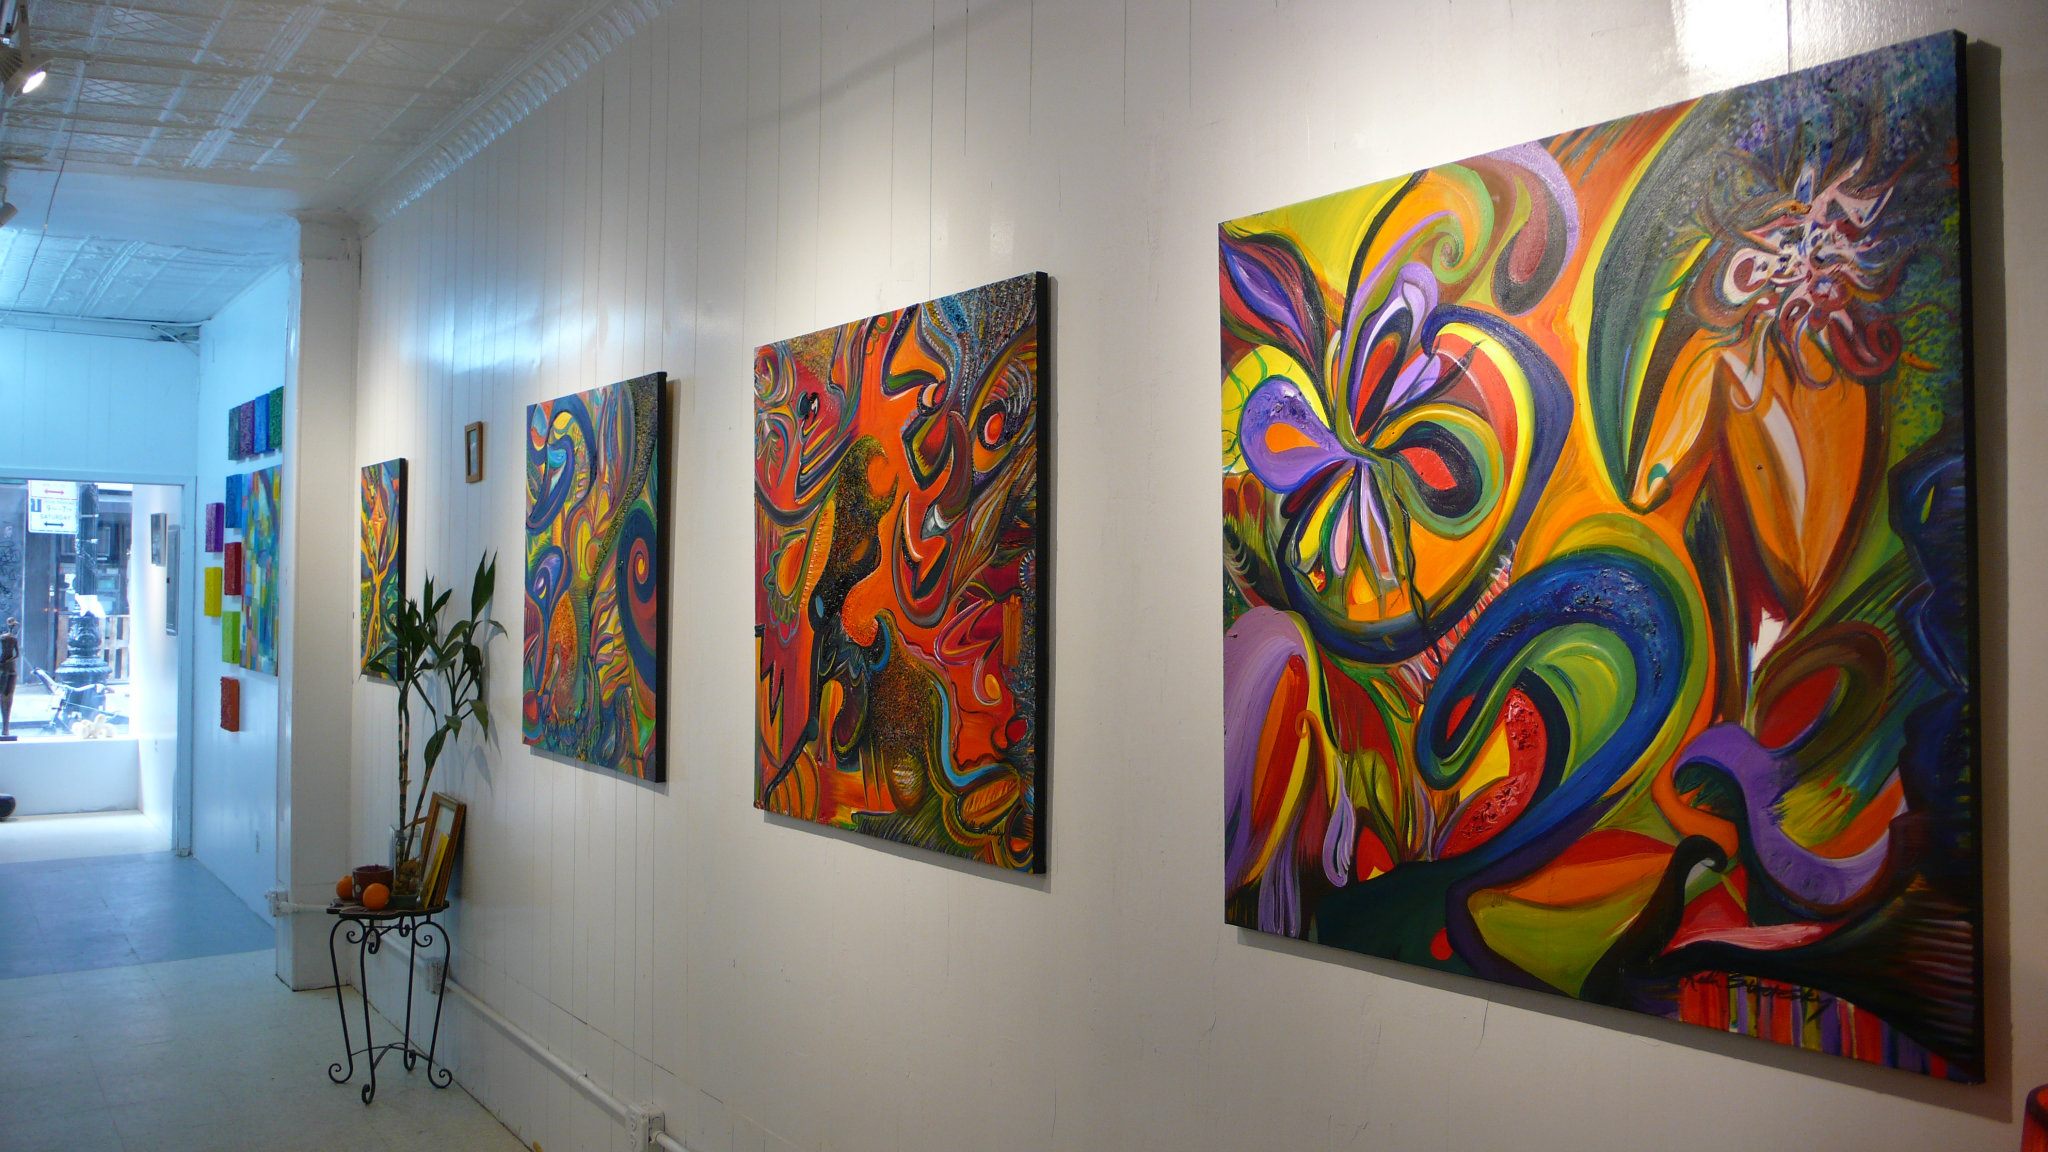 Exhibitions